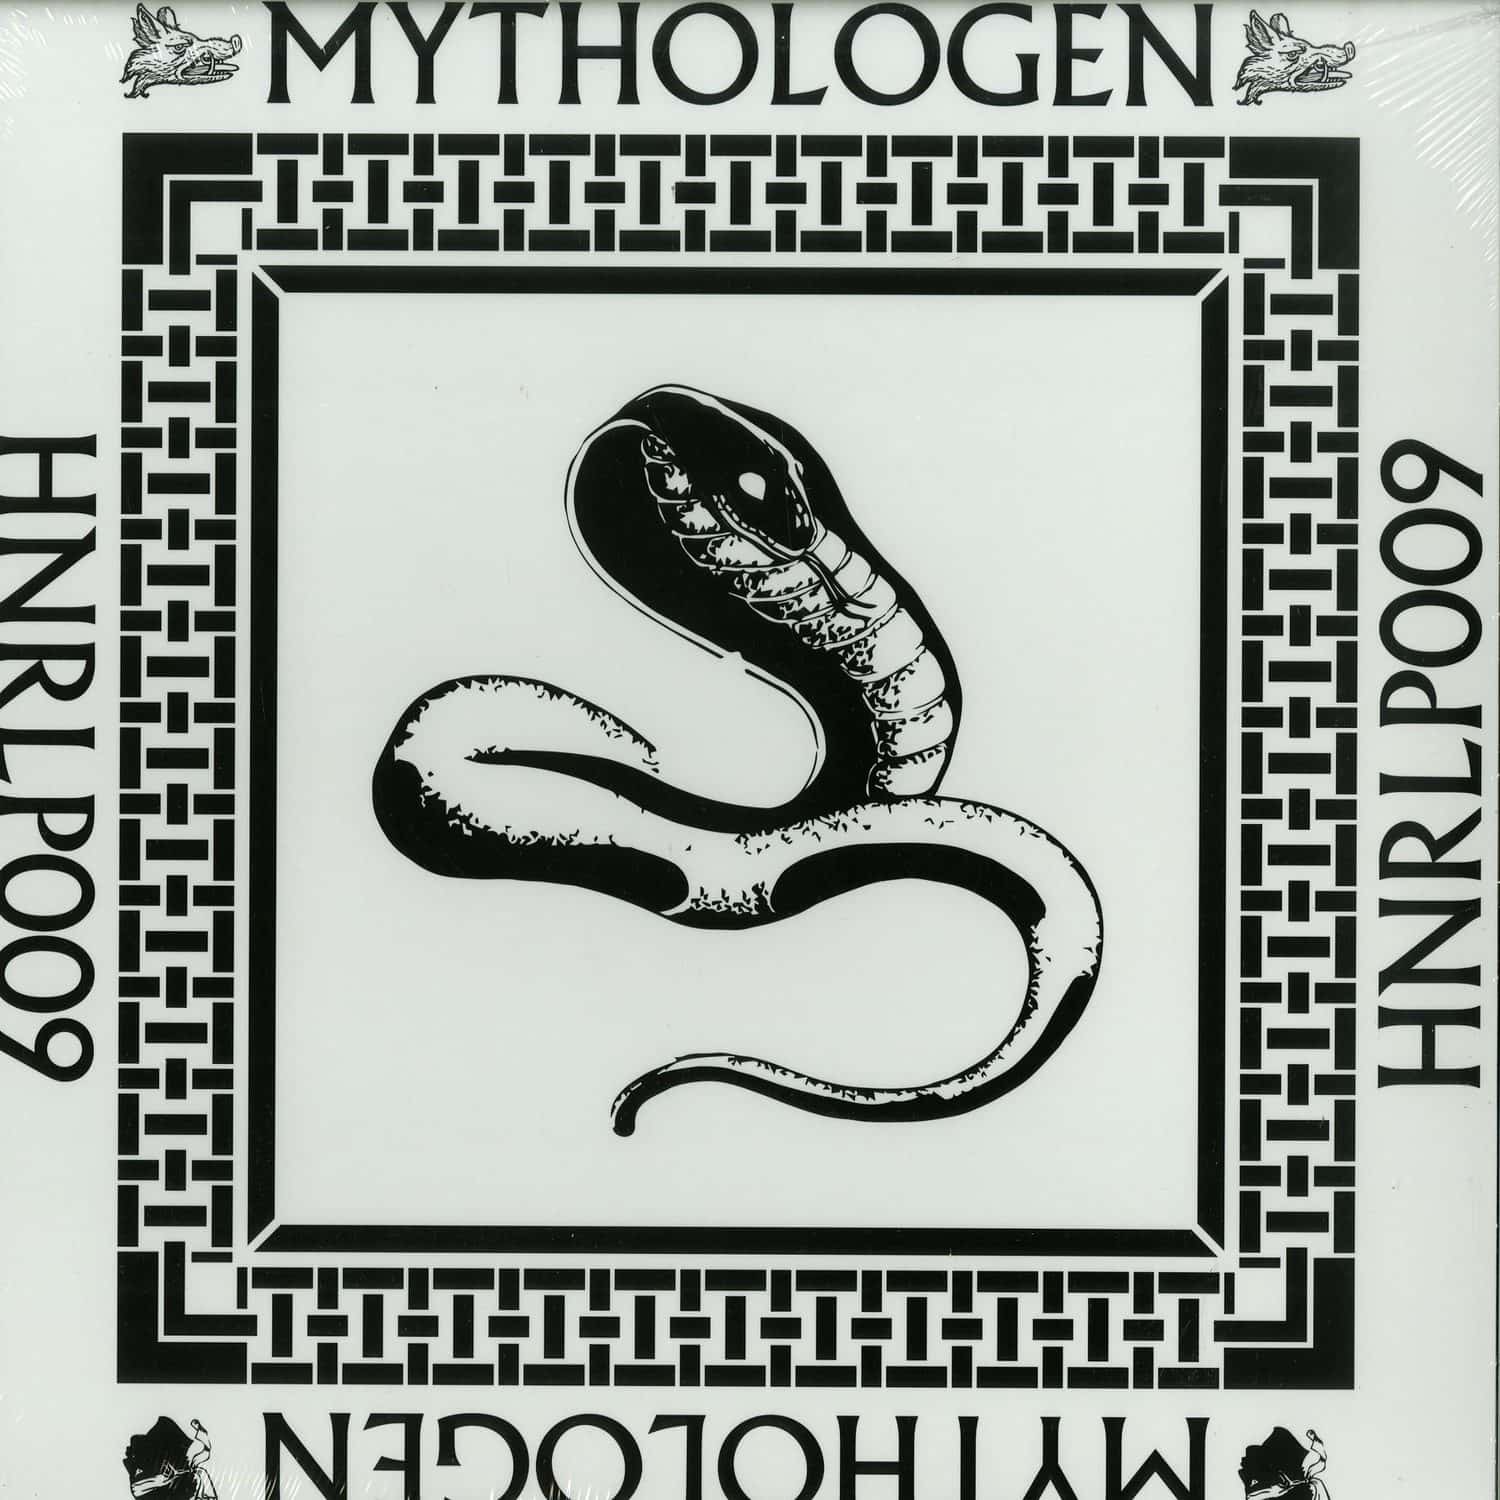 Mythologen - MYTHOLOGEN 